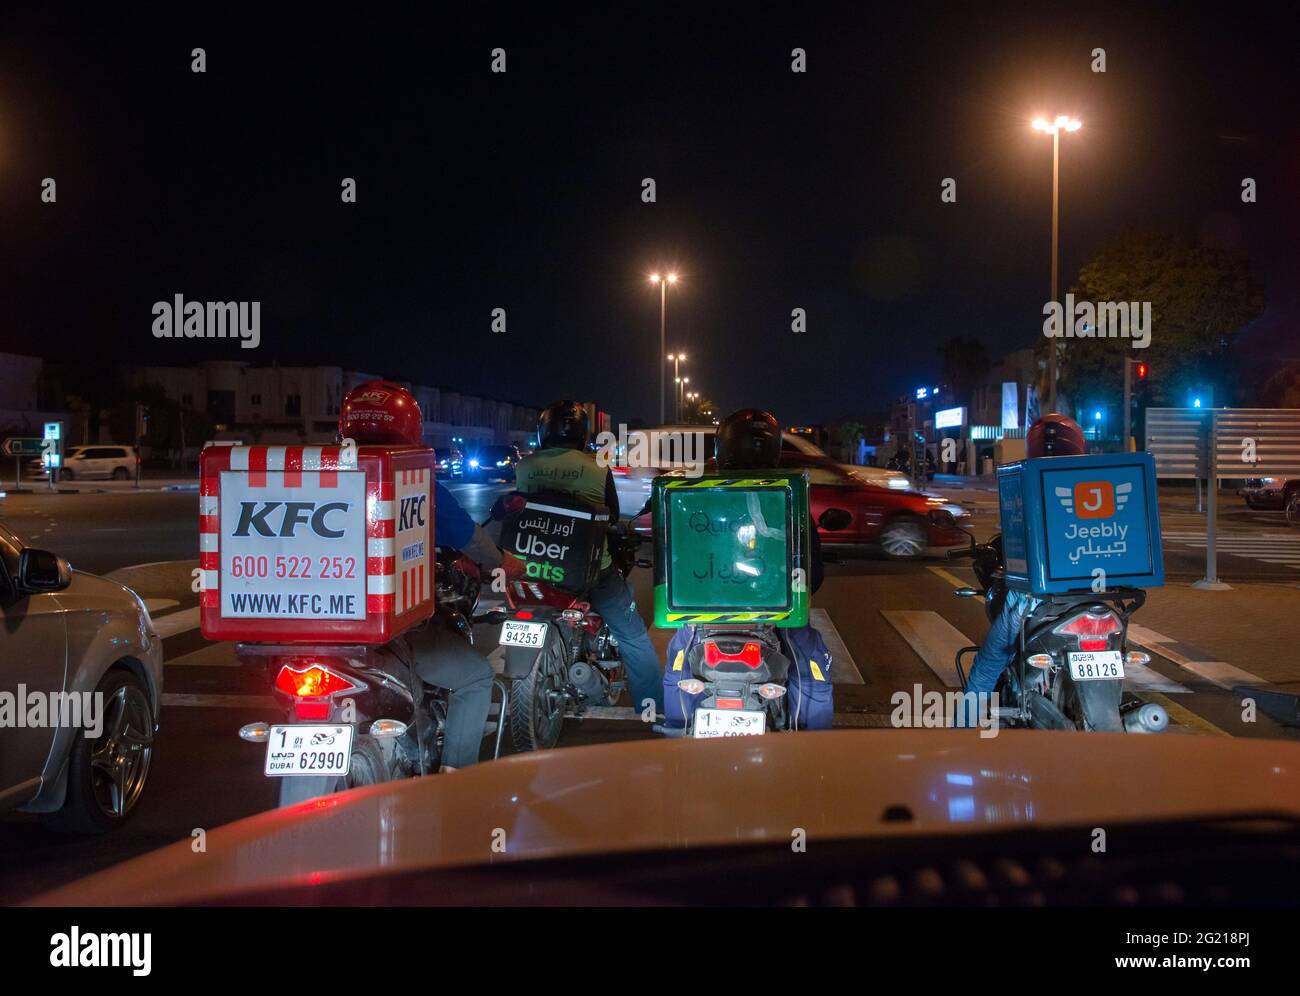 Scène de rue avec des motocyclistes de livraison de nourriture Banque D'Images